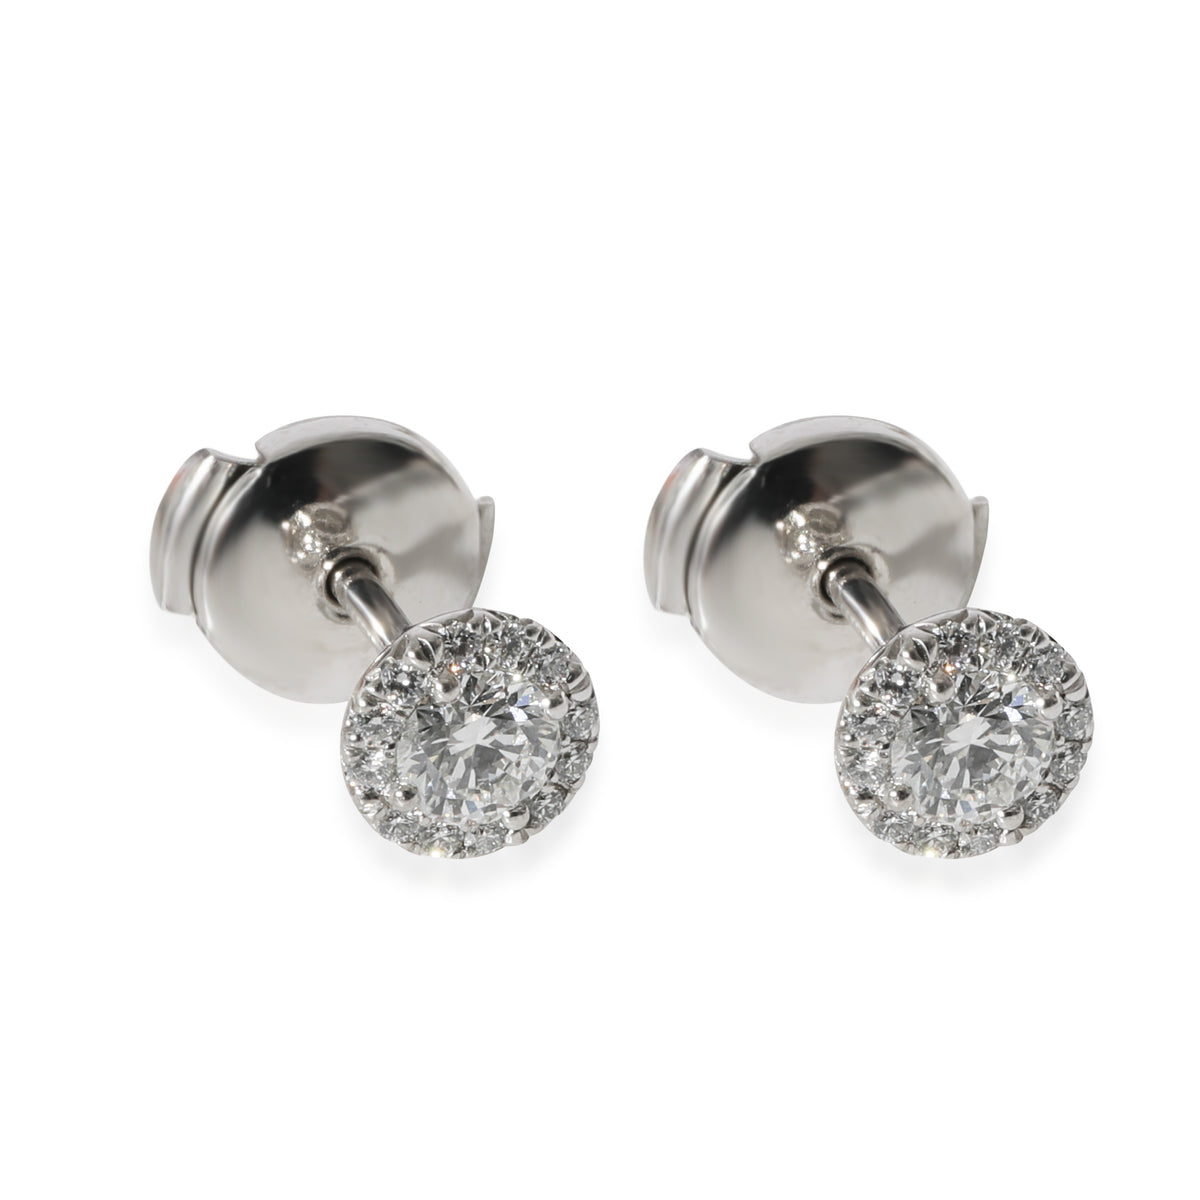 Tiffany & Co. Soleste Diamond Earrings in 950 Platinum DEF VVS 0.44 CTW